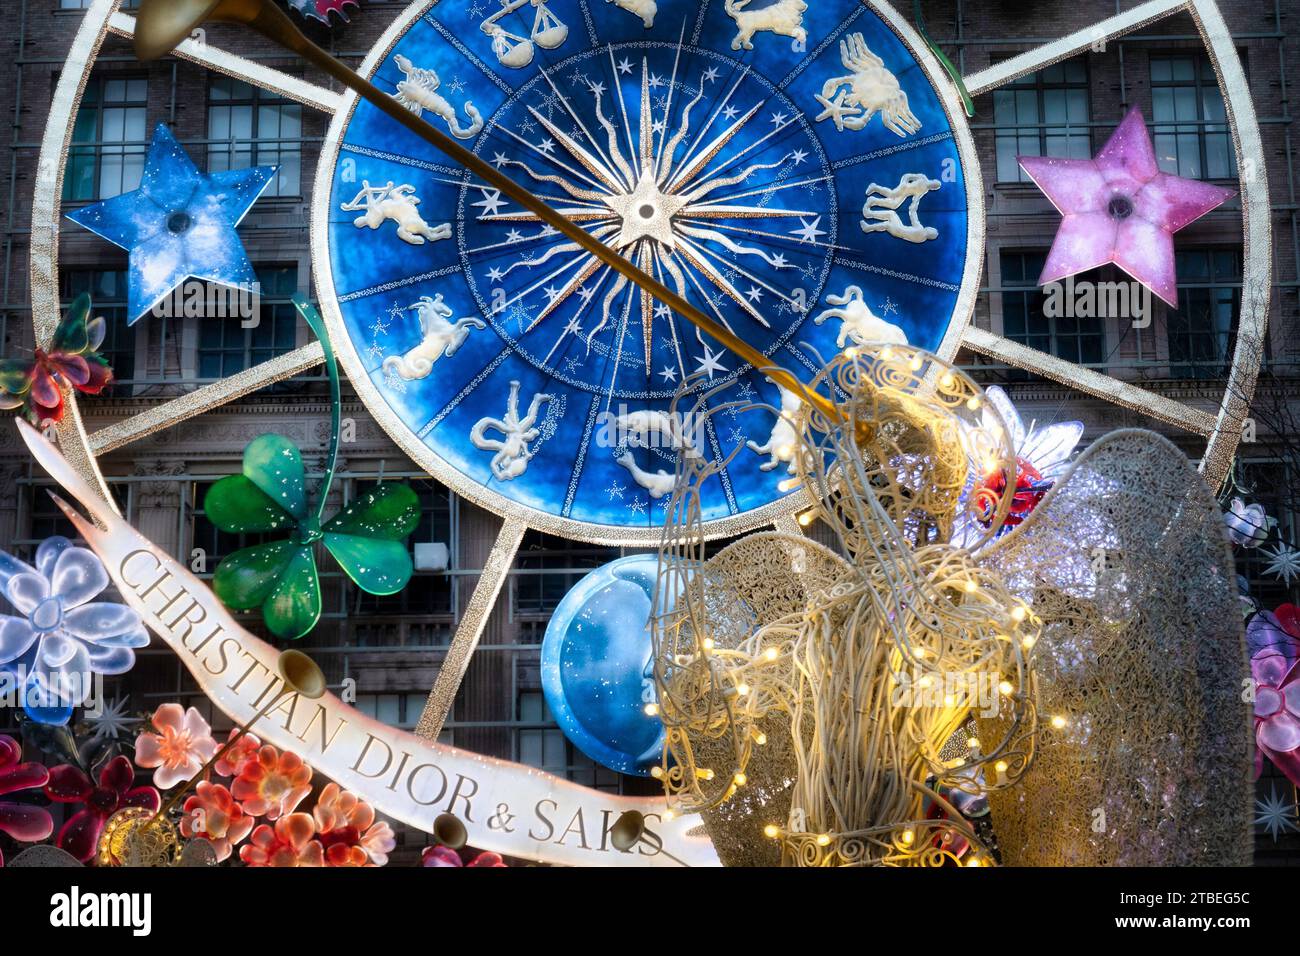 Le carrousel de rêves de Christian Dior est le thème des vitrines de vacances Saks Fifth Avenue, 2023, New York City, USA Banque D'Images